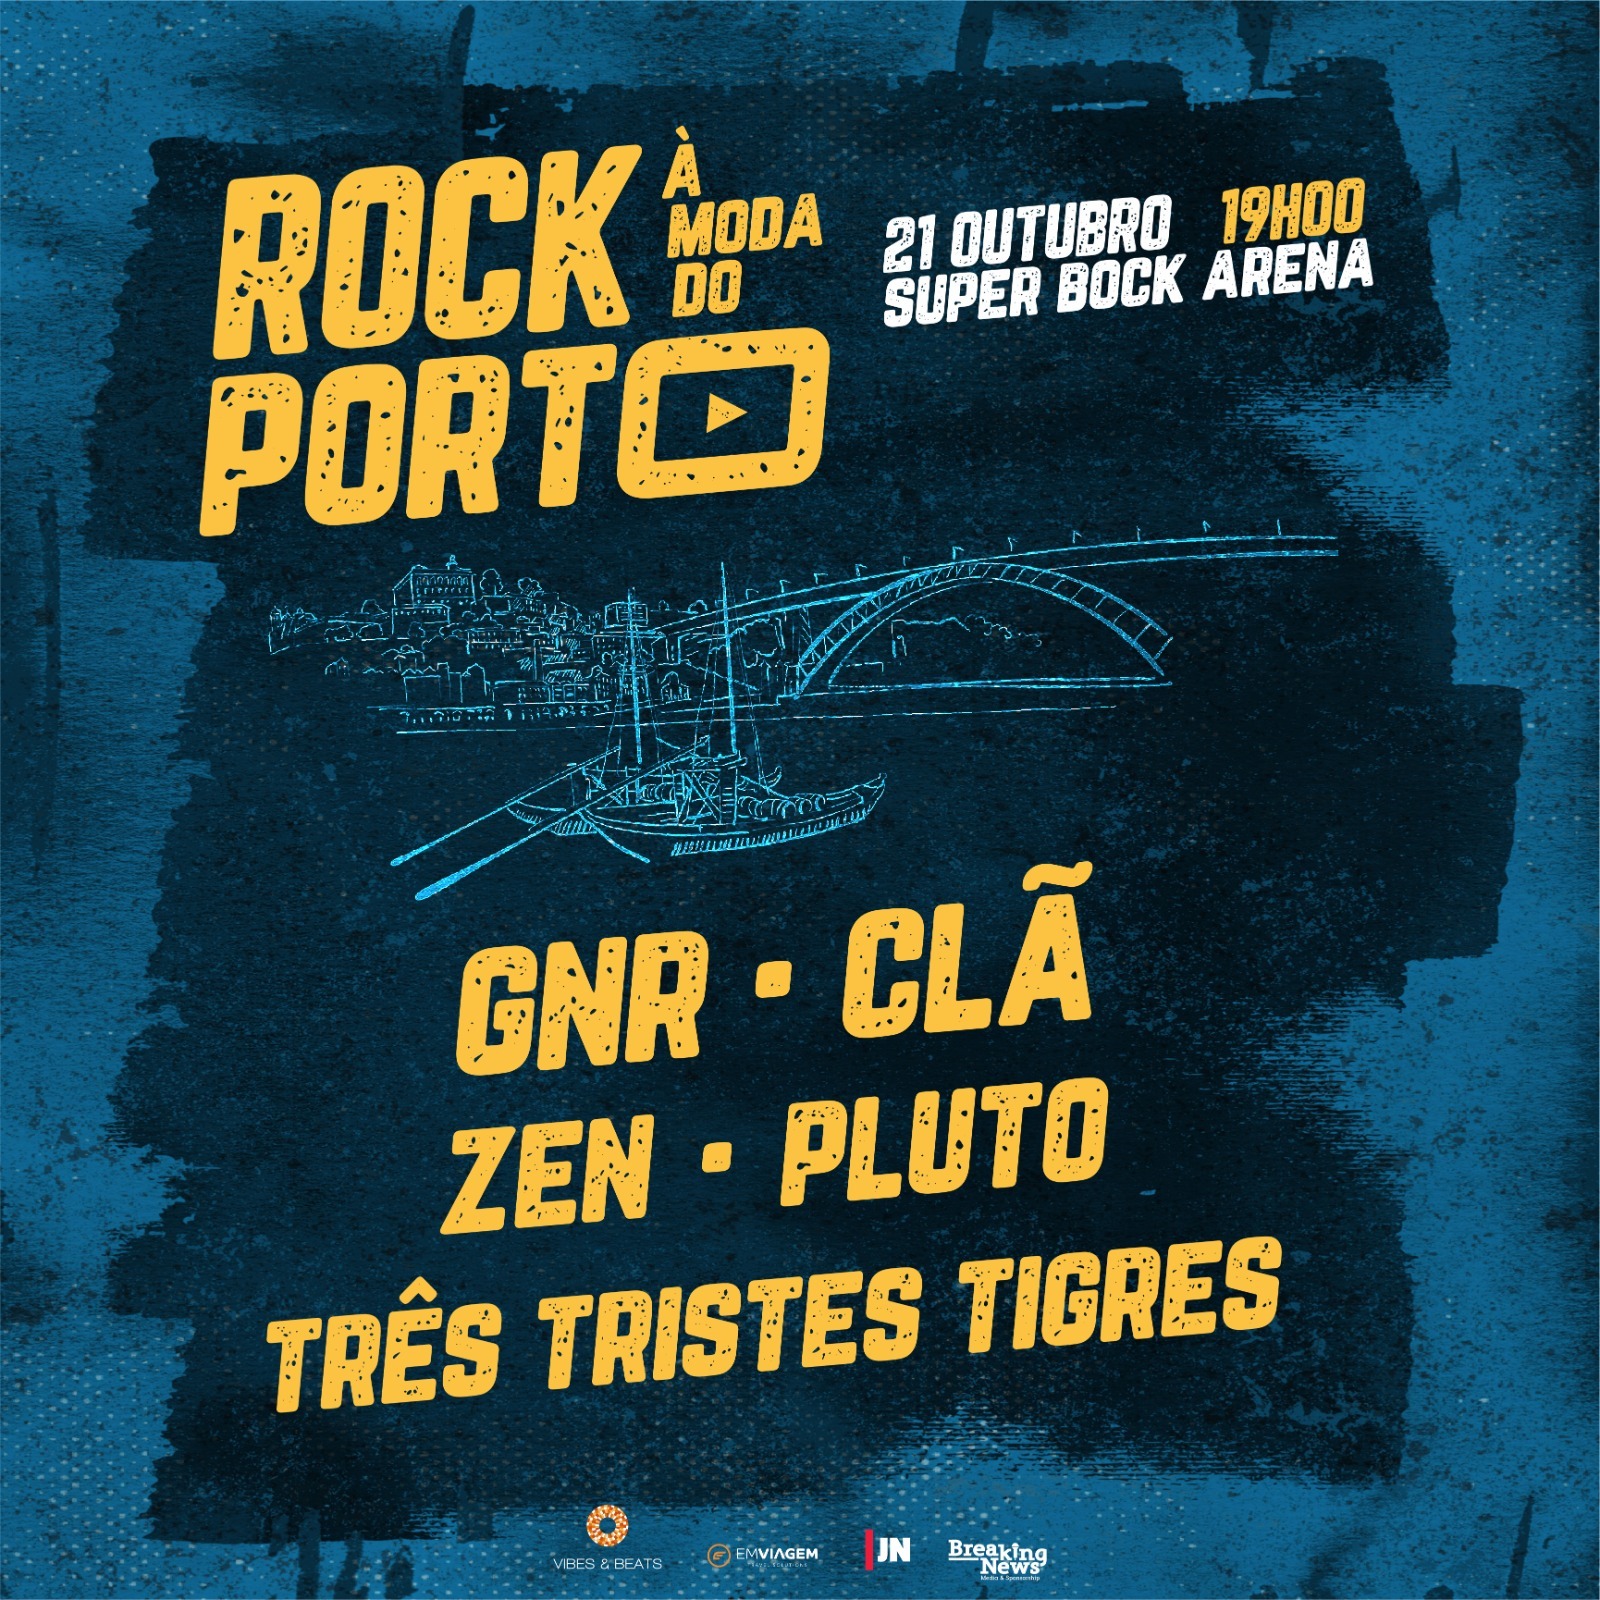 Rock à moda do Porto Post